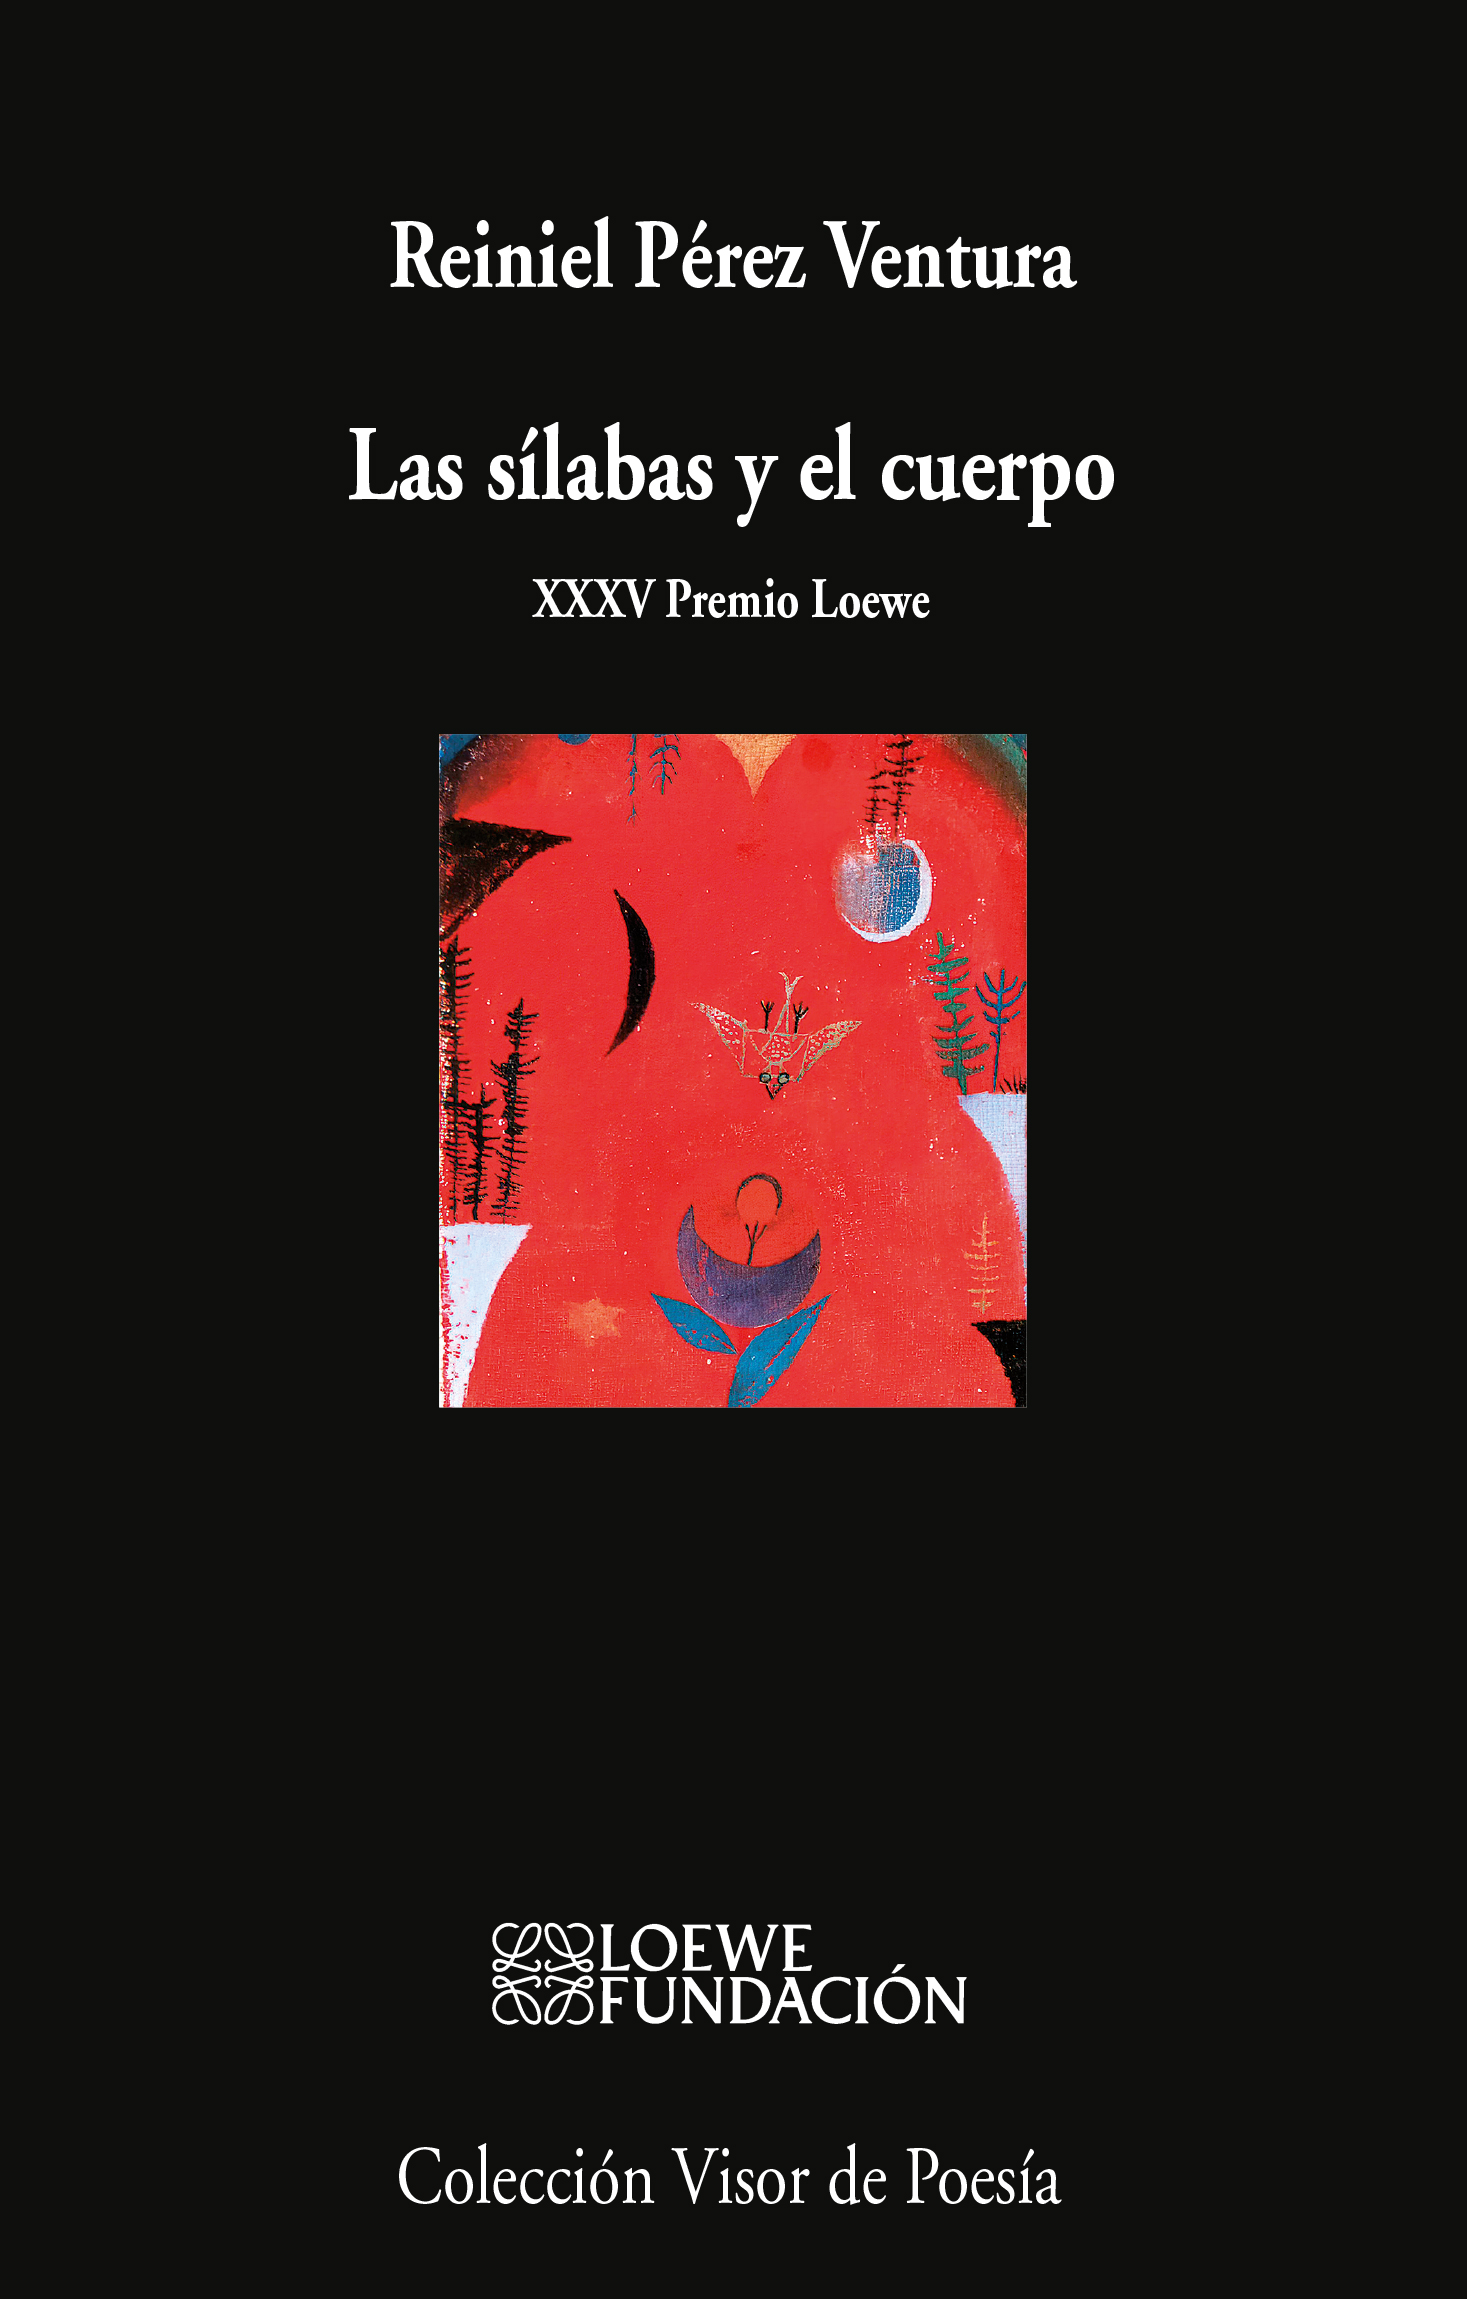 2 poemas de Las sílabas y el cuerpo, de Reiniel Pérez Ventura